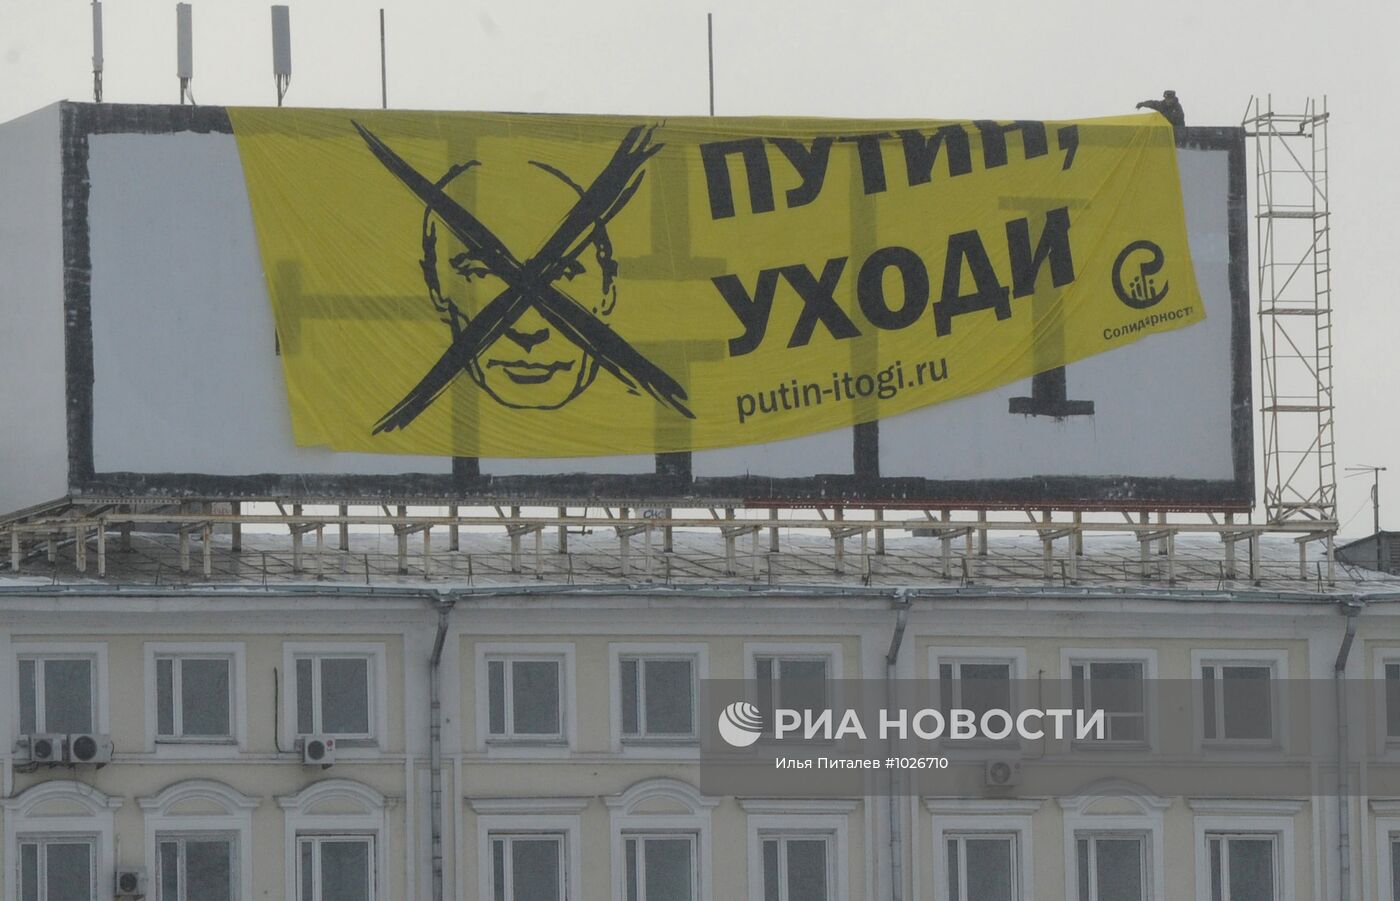 Баннер с изображением В. Путины вывесили напротив Кремля